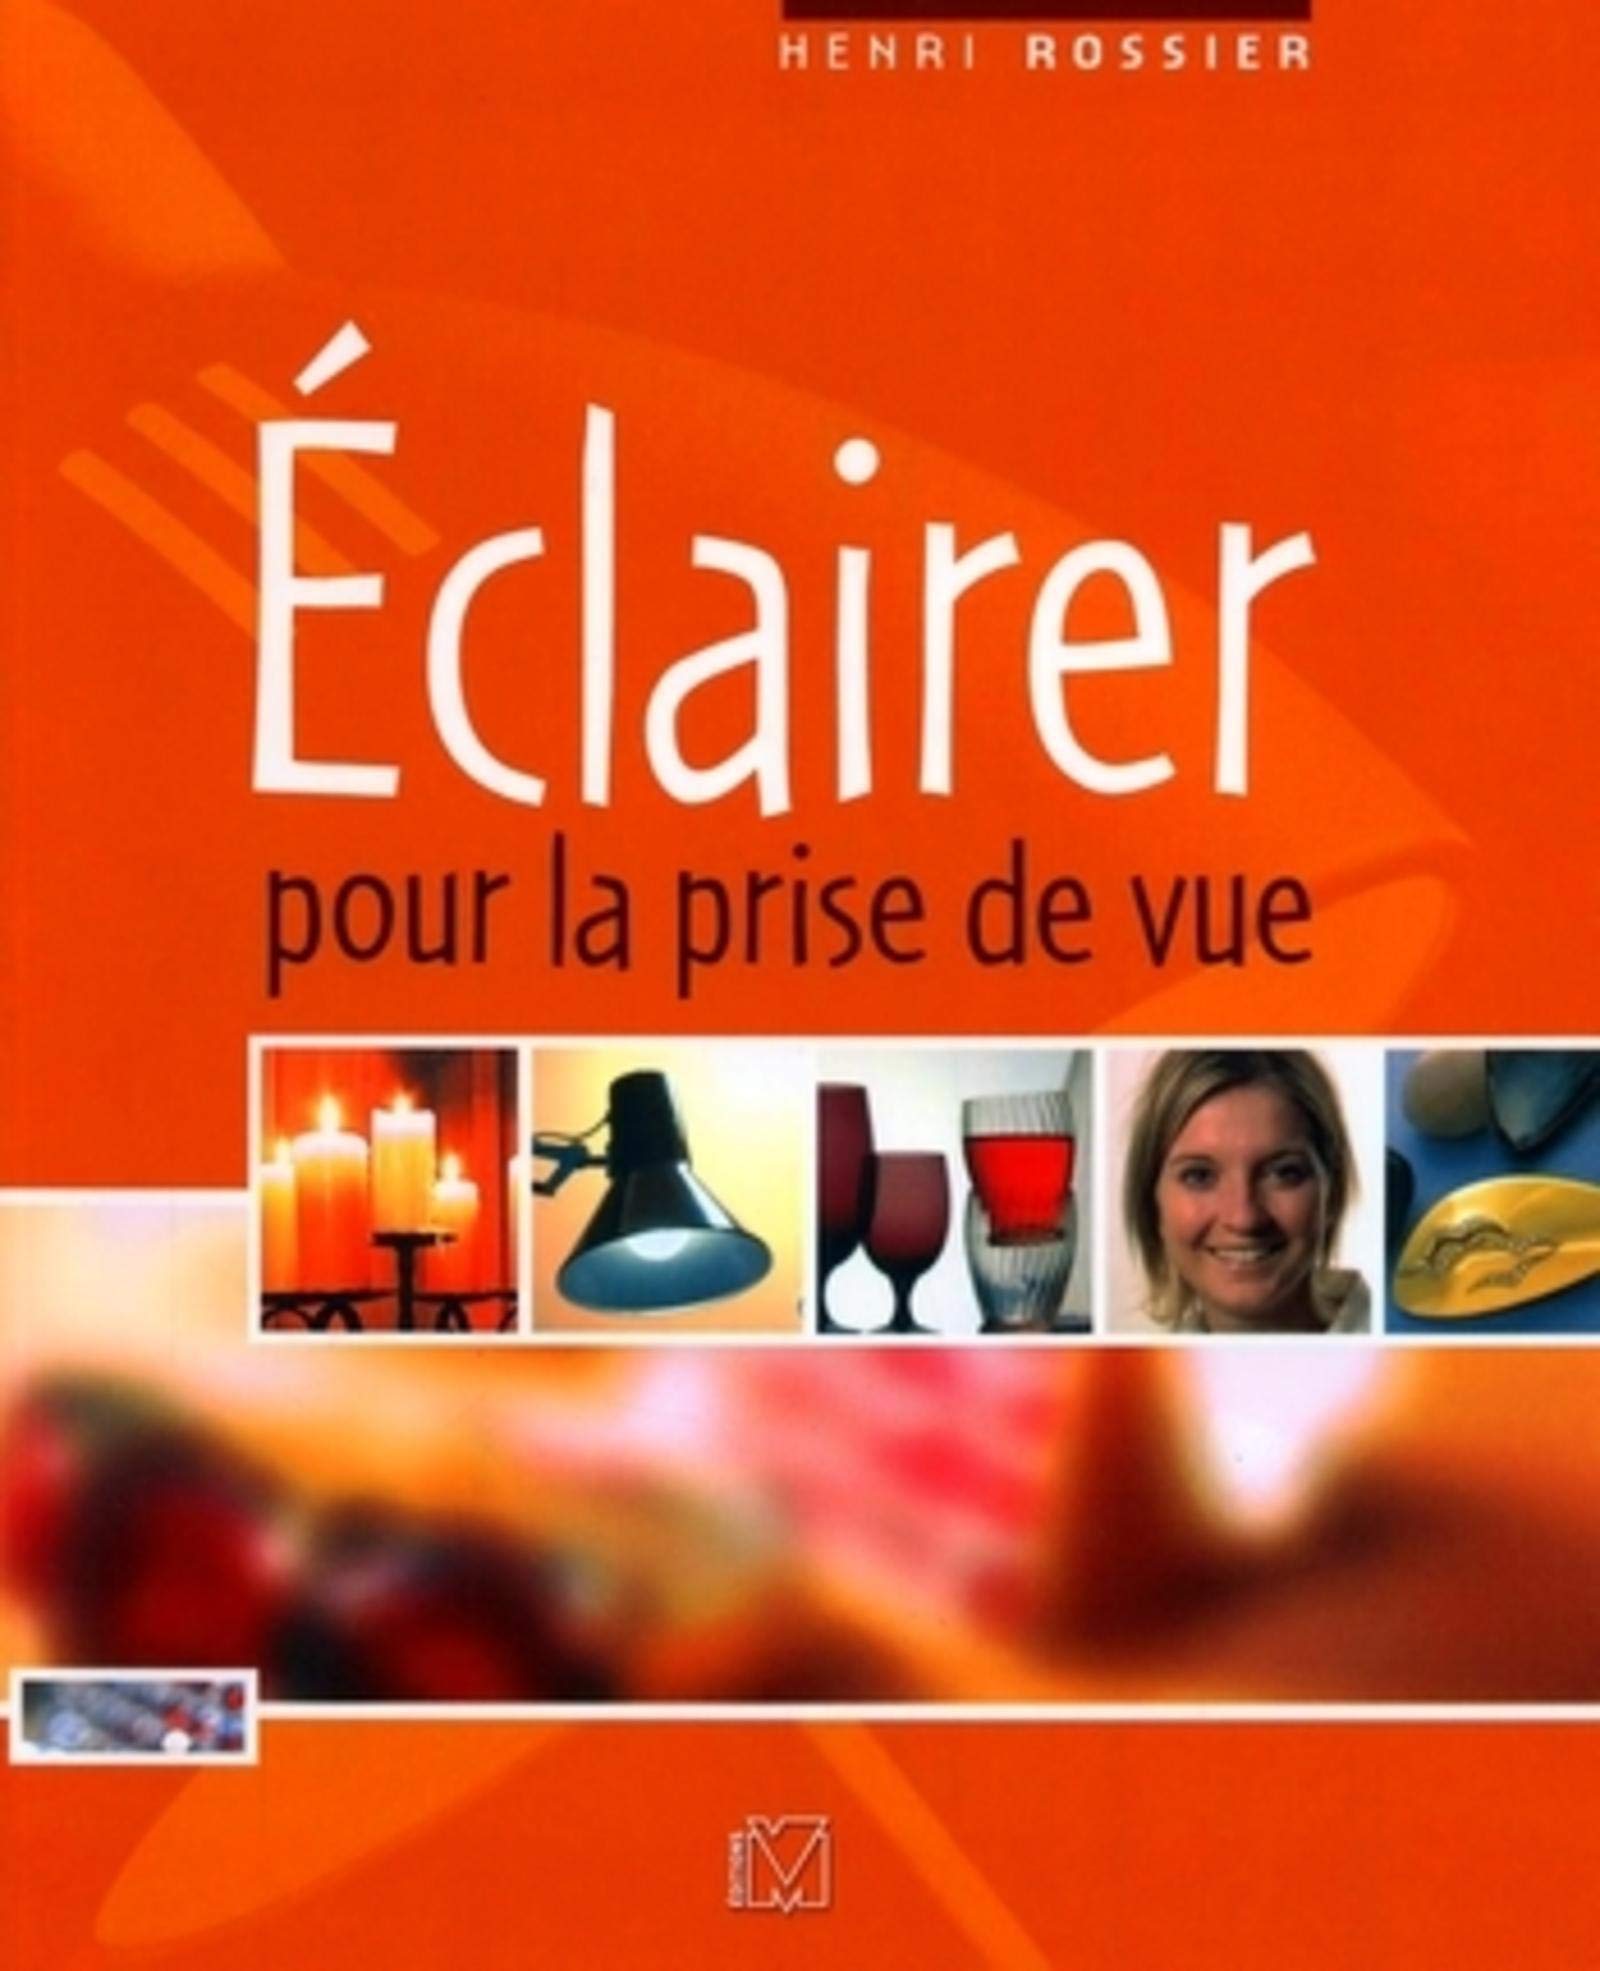 Livre ISBN 2212672616 Éclairer pour la prise de vue (Henri Rossier)